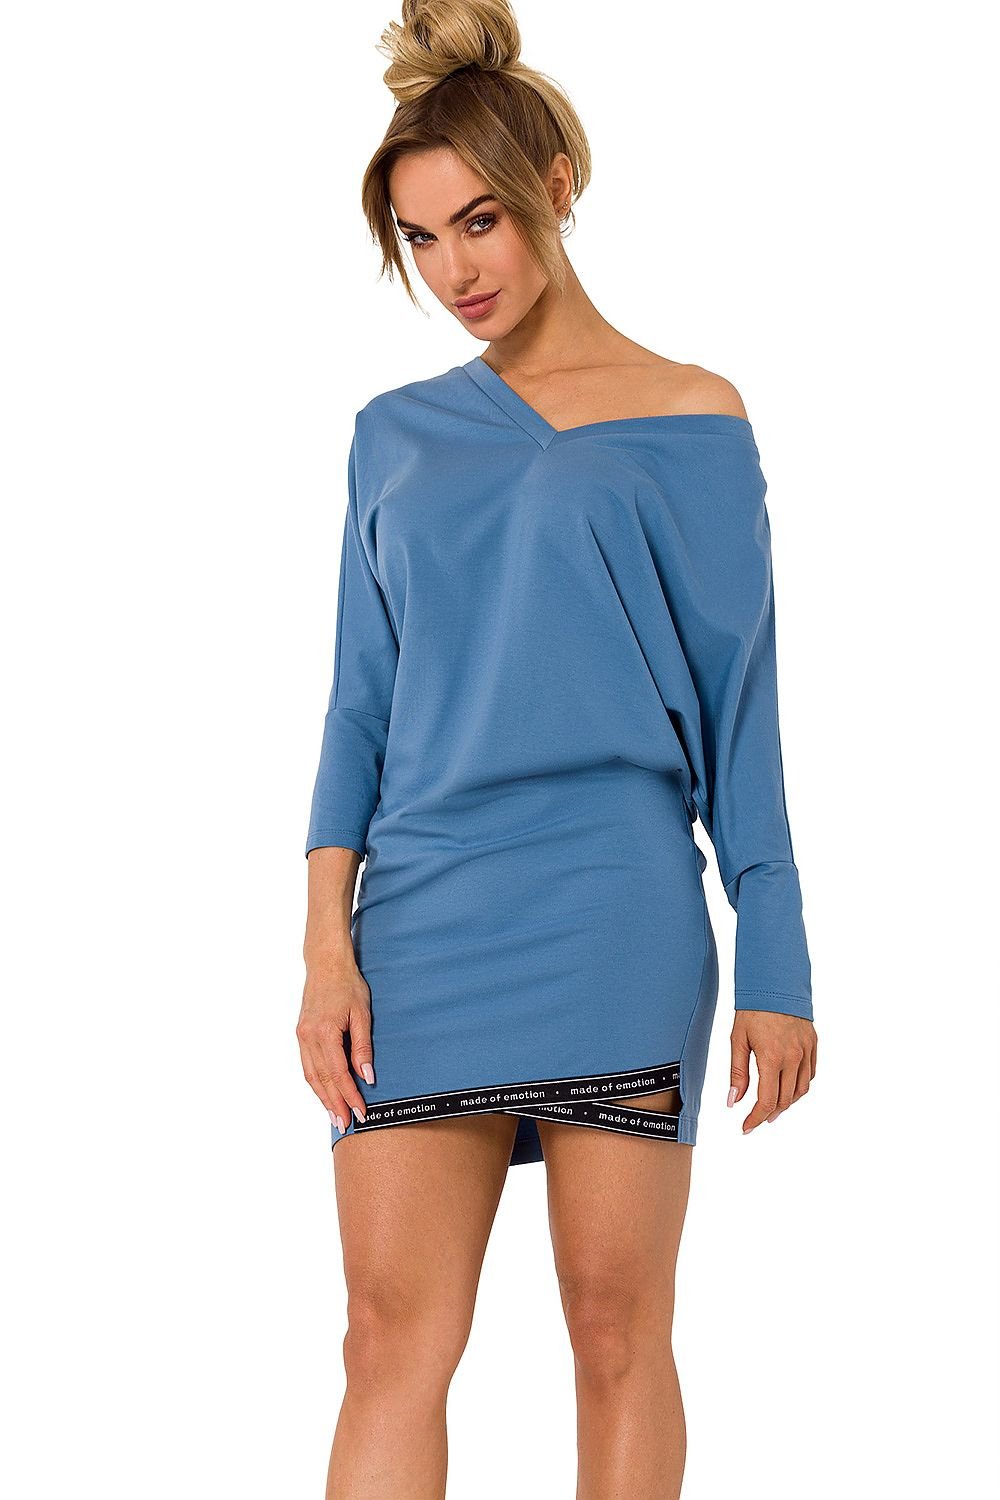 TEEK - Large V-Neck Sweatshirt Dress DRESS TEEK MH blue L 